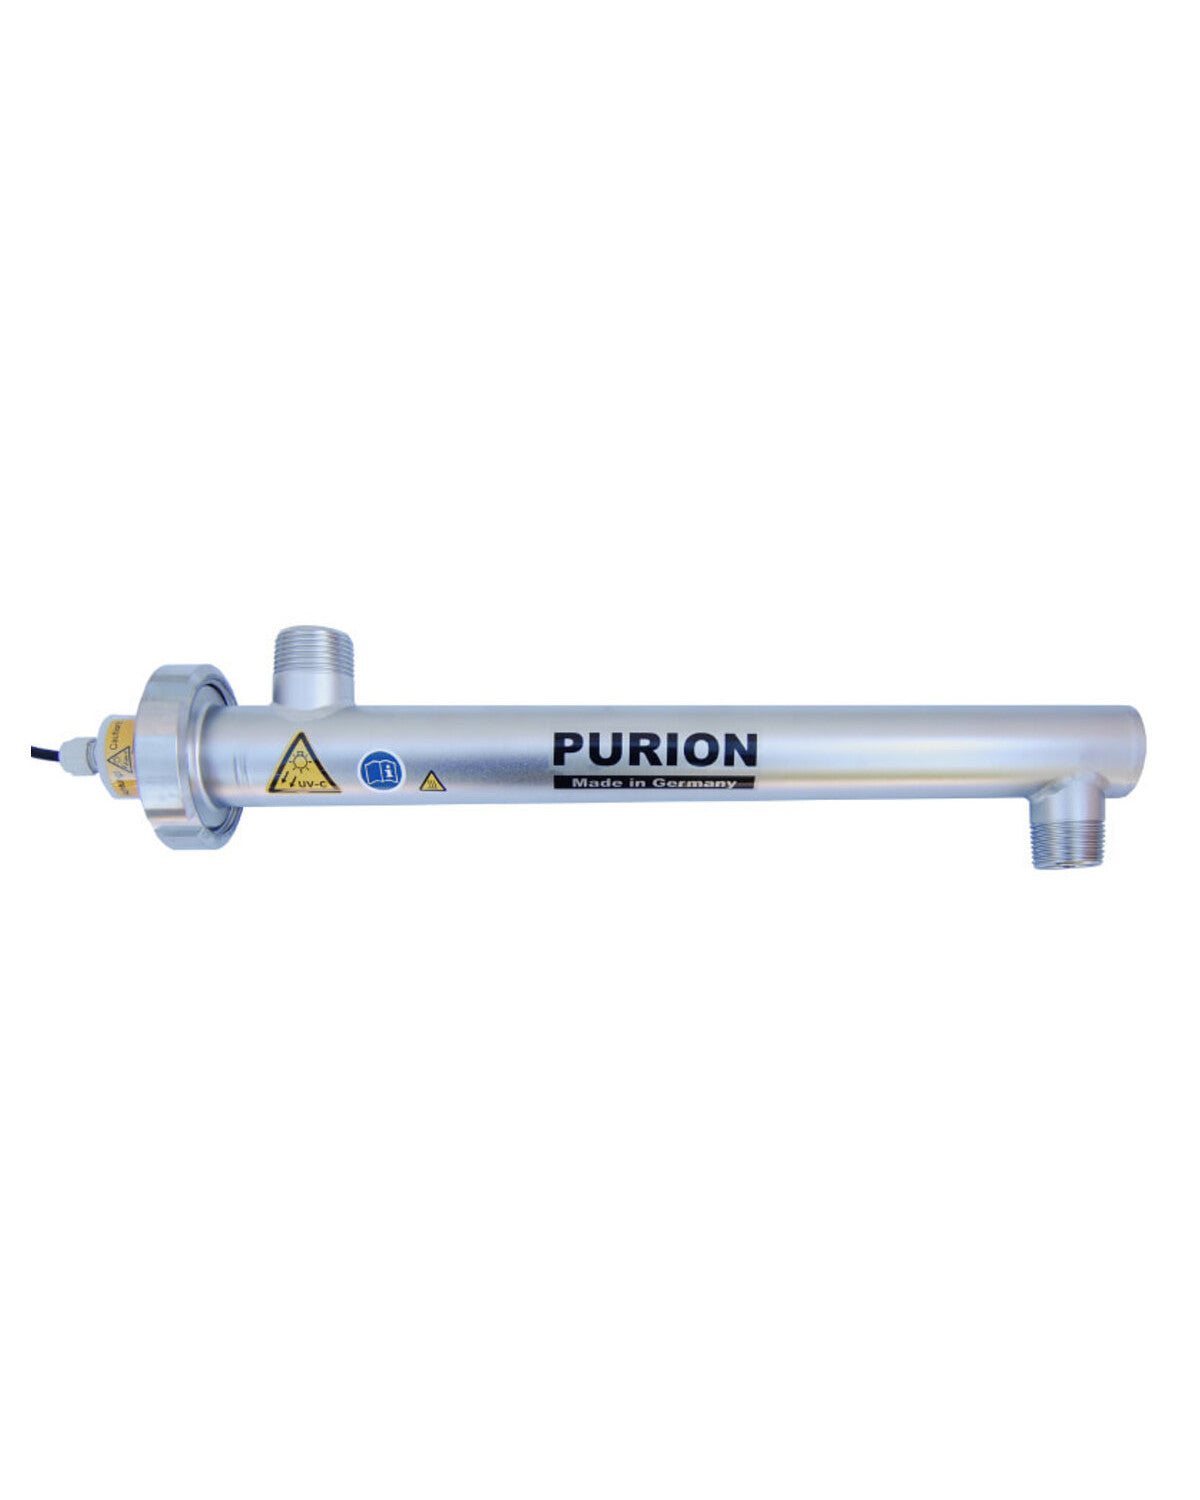 Das PURION 1000 12/24 V DC OTC der PURION GmbH ist ein leistungsstarkes Wasserdesinfektionssystem, das die Selbstversorgung mit sauberem Trinkwasser garantiert.